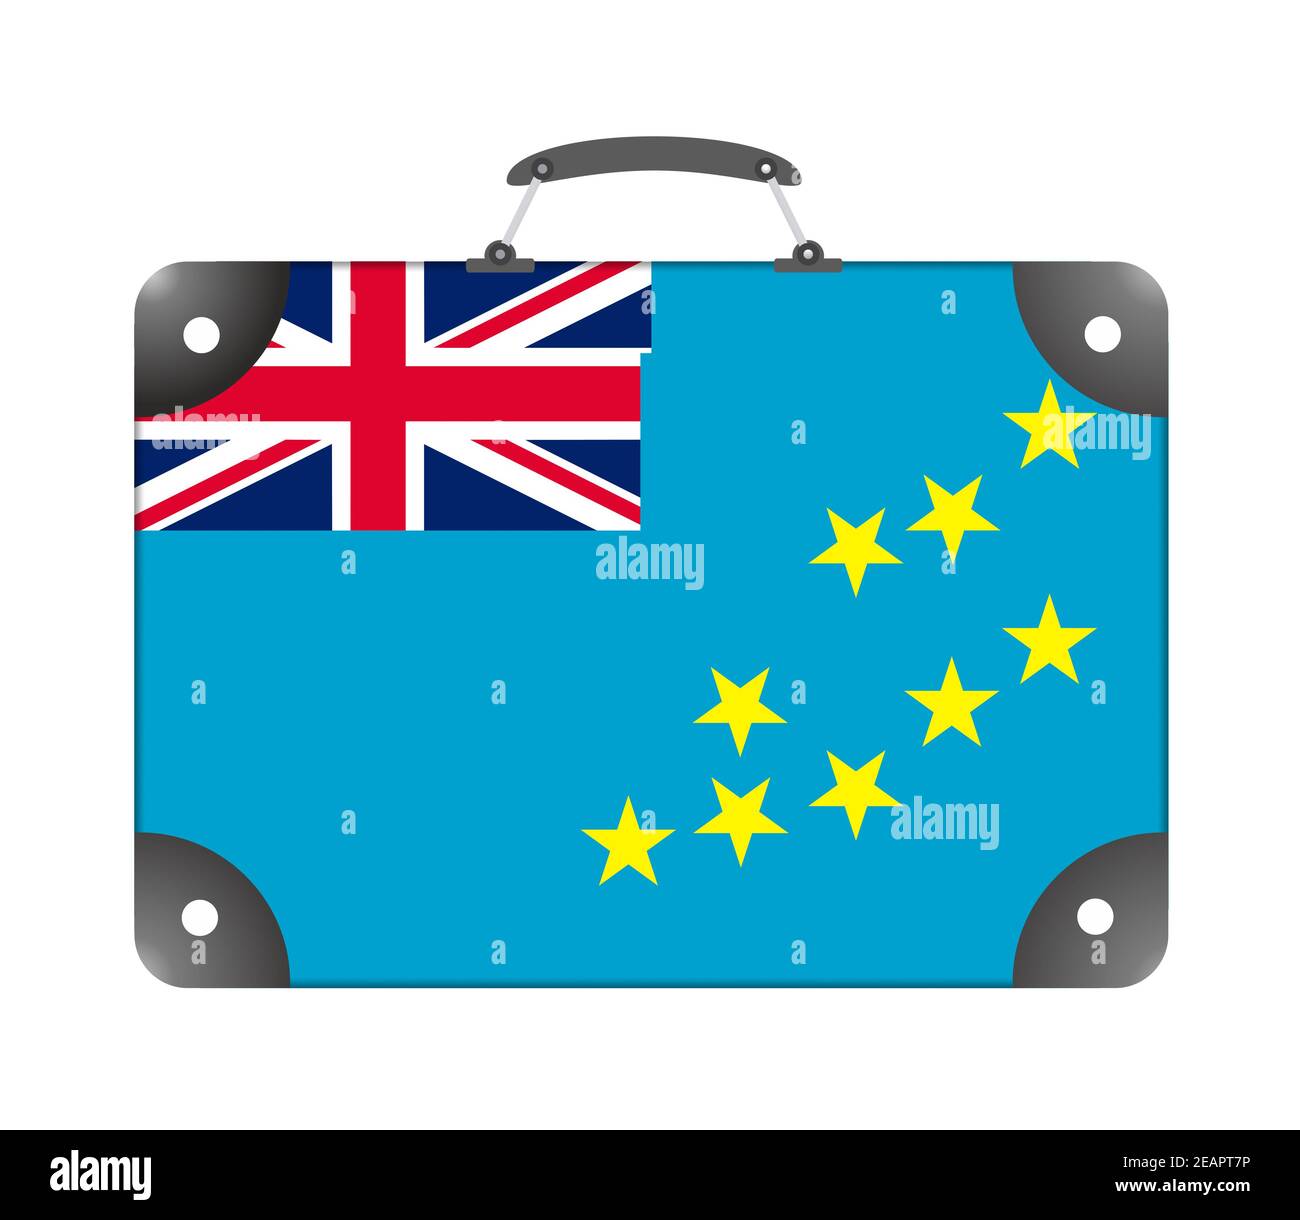 Drapeau national de Tuvalu sous forme de valise de voyage sur fond blanc Banque D'Images